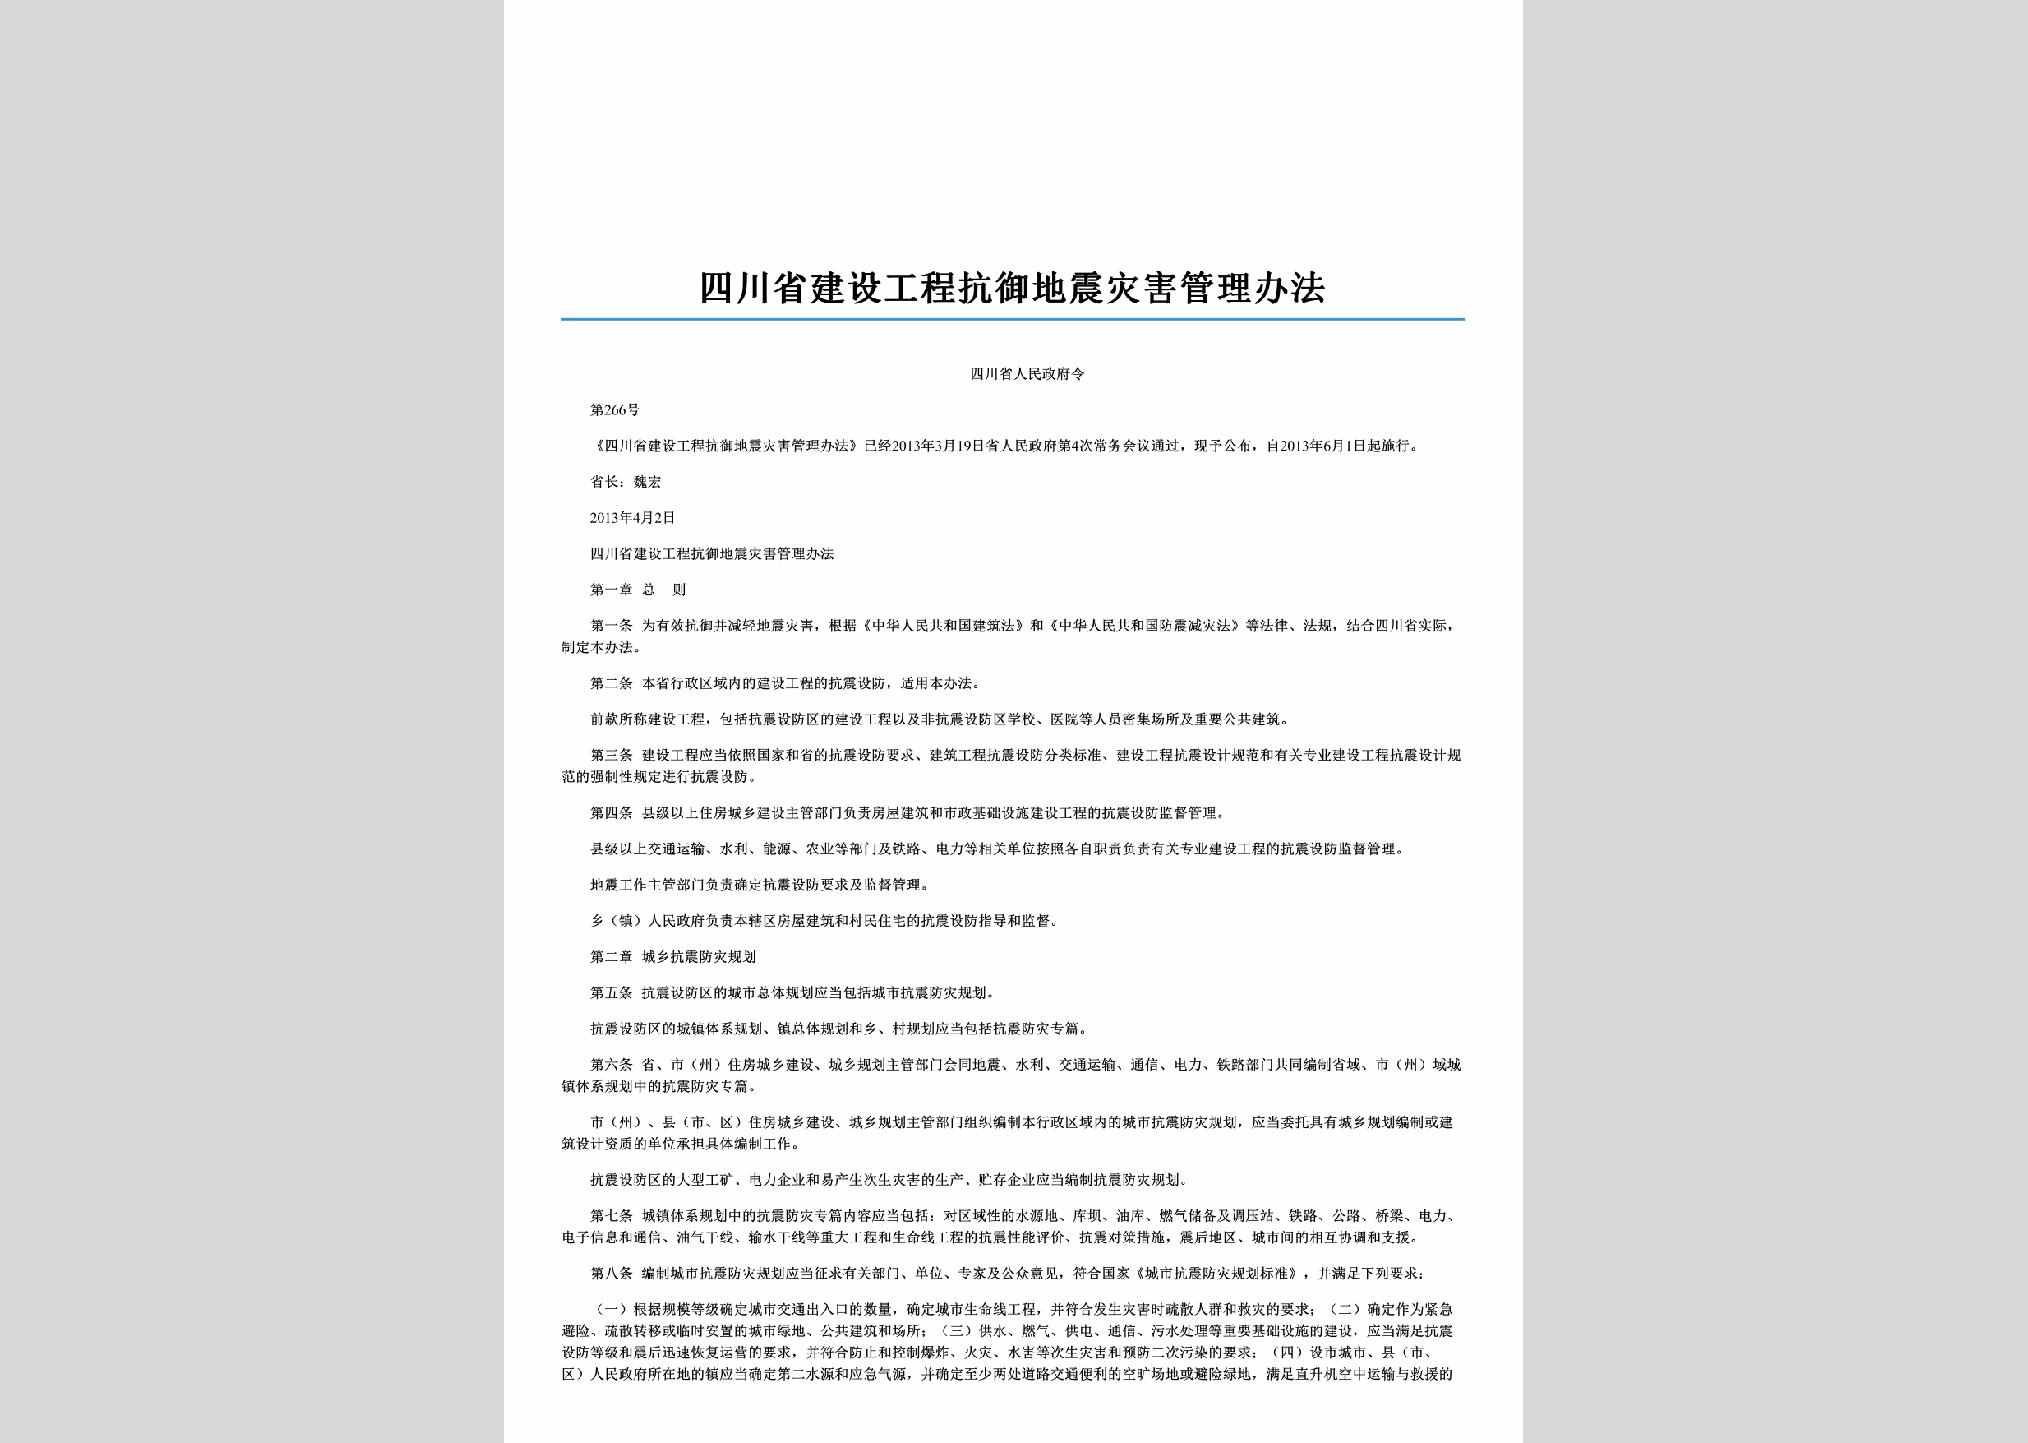 四川省人民政府令第266号：四川省建设工程抗御地震灾害管理办法